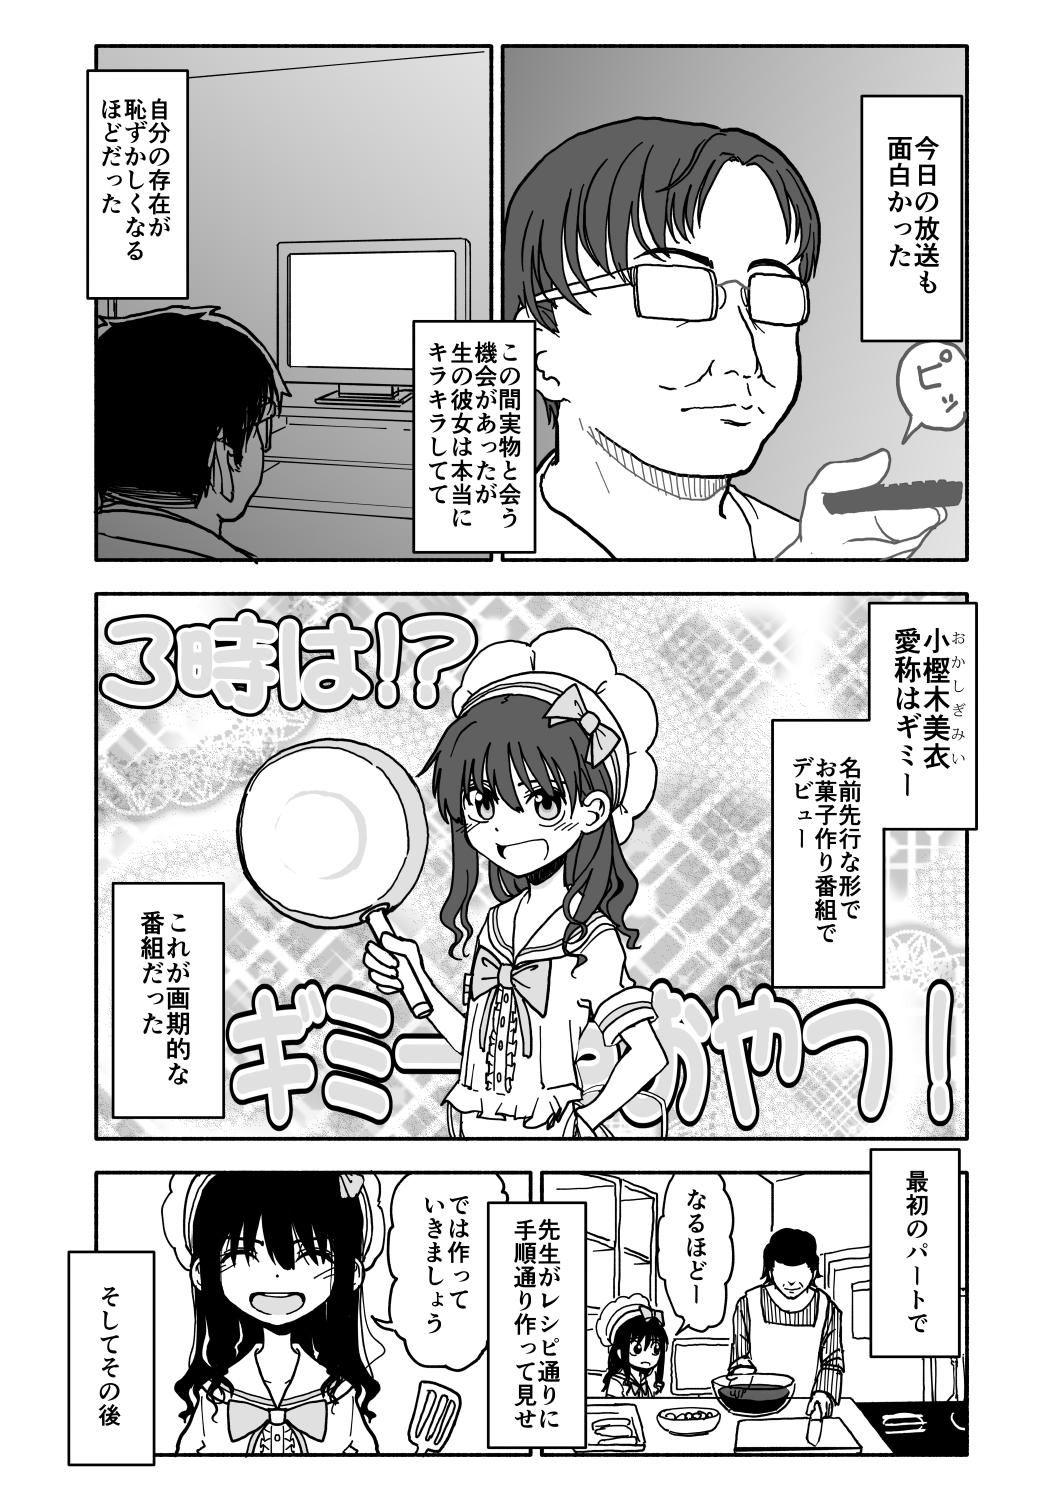 Nasty Okasi Tsukuri Idol ☆ Gimi ! Kankin choukyo manga Women - Page 4